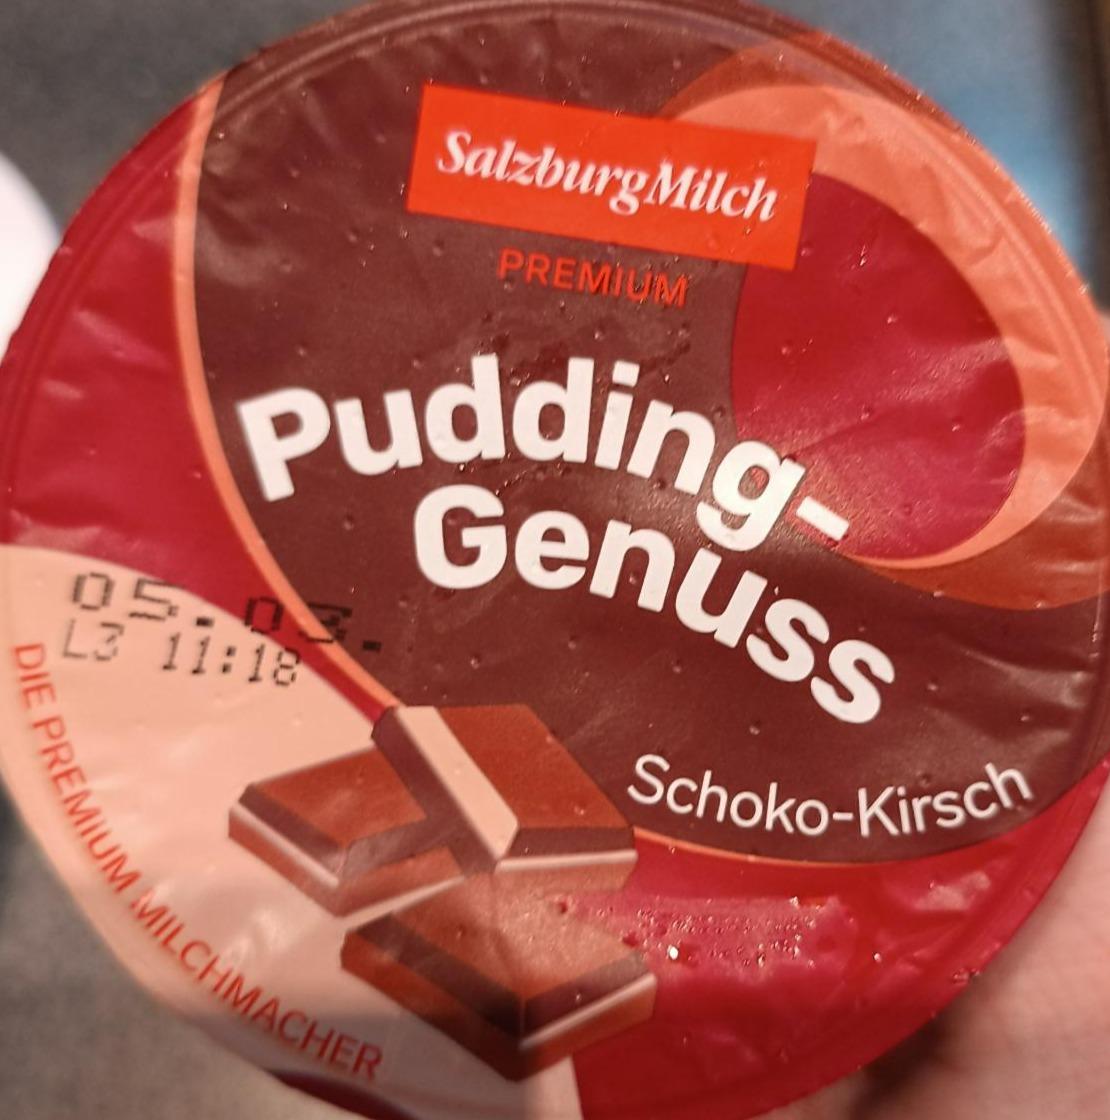 Fotografie - Pudding genuss Schoko-Kirsch SalzburgMilch